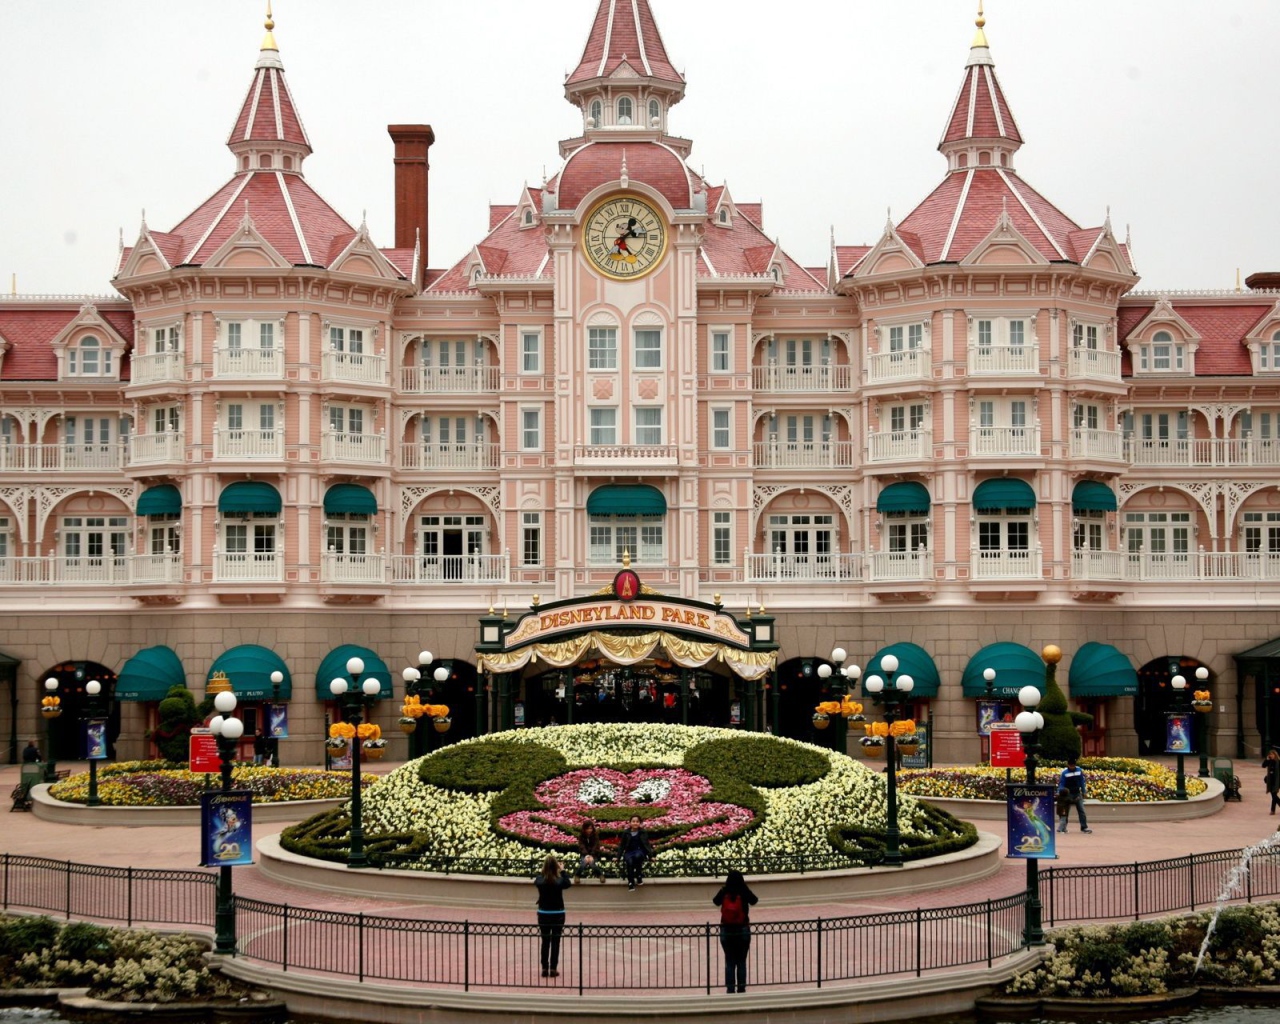 Pink Castle in Disneyland, France